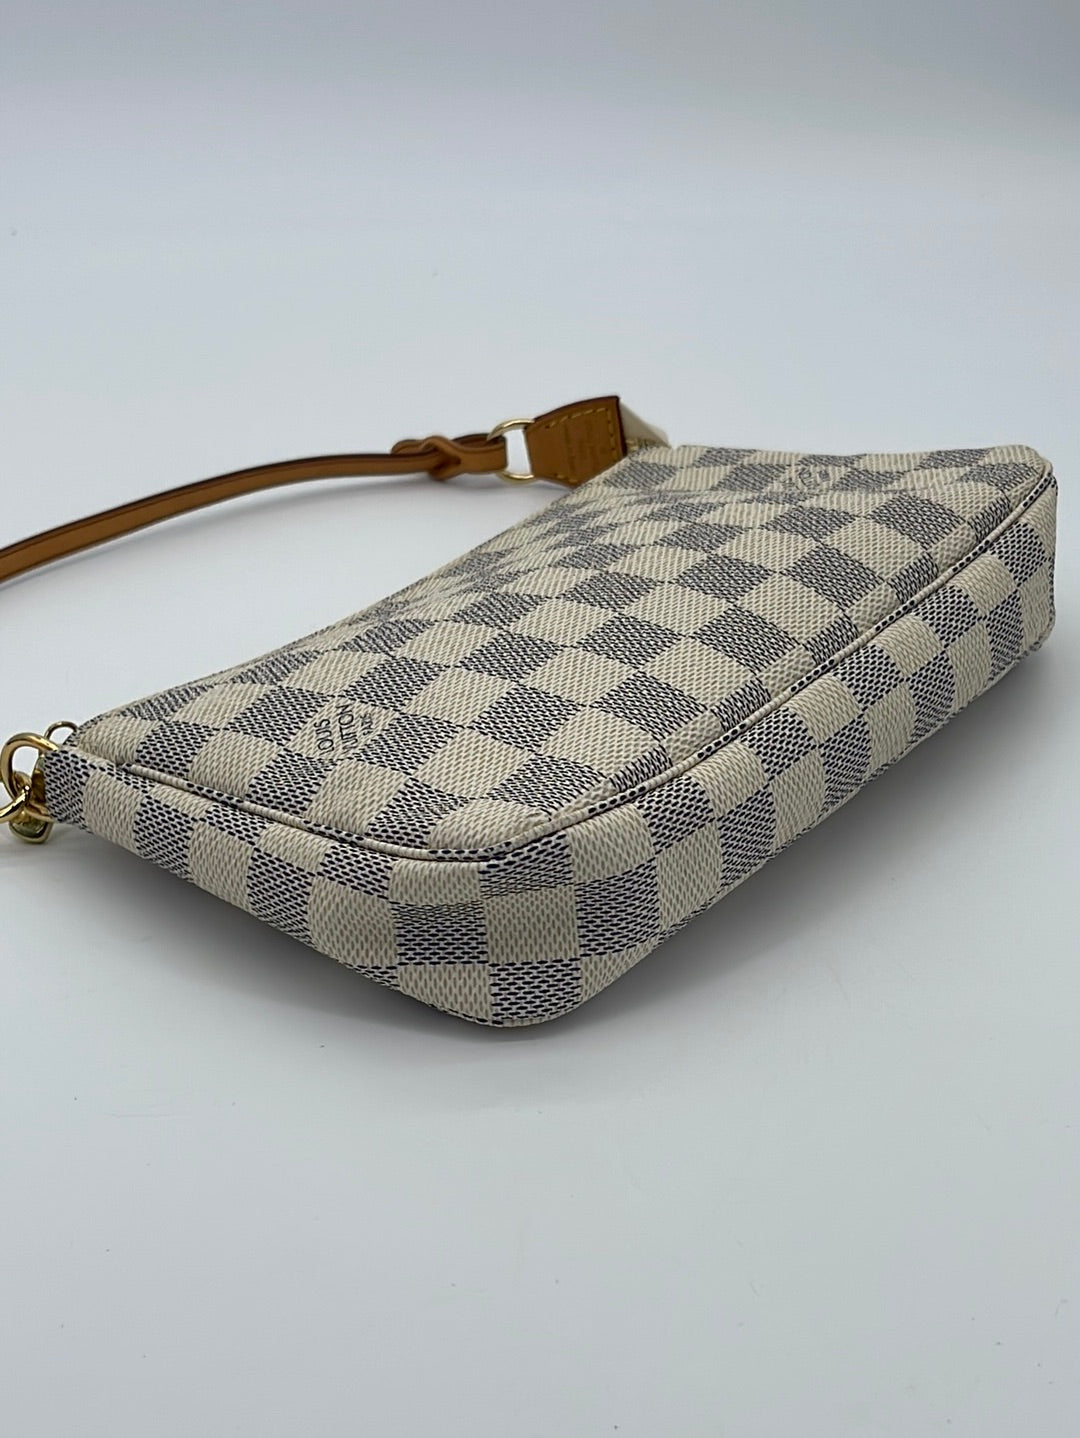 Louis Vuitton Damier Azur Pochette Accessoires - Ankauf & Verkauf Second  Hand Designertaschen und Accessoires